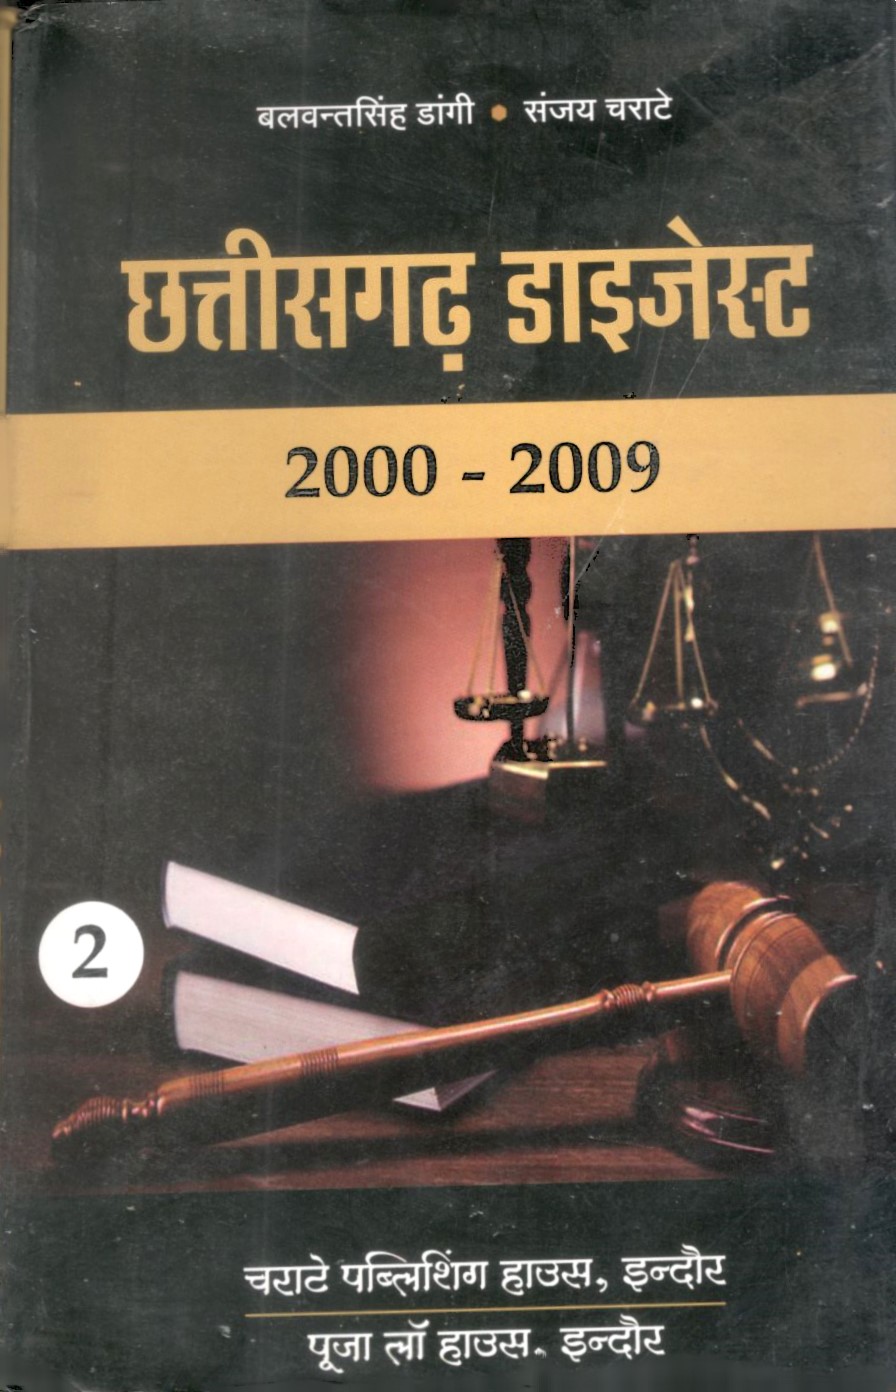 बलवंत सिंह डांगी, संजय चराटे - छत्तीसगढ़ डाइजेस्ट (सिविल एवं क्रिमिनल) 2000-2009 / Chhattisgarh Digest (Civil & Criminal) 2000-2009